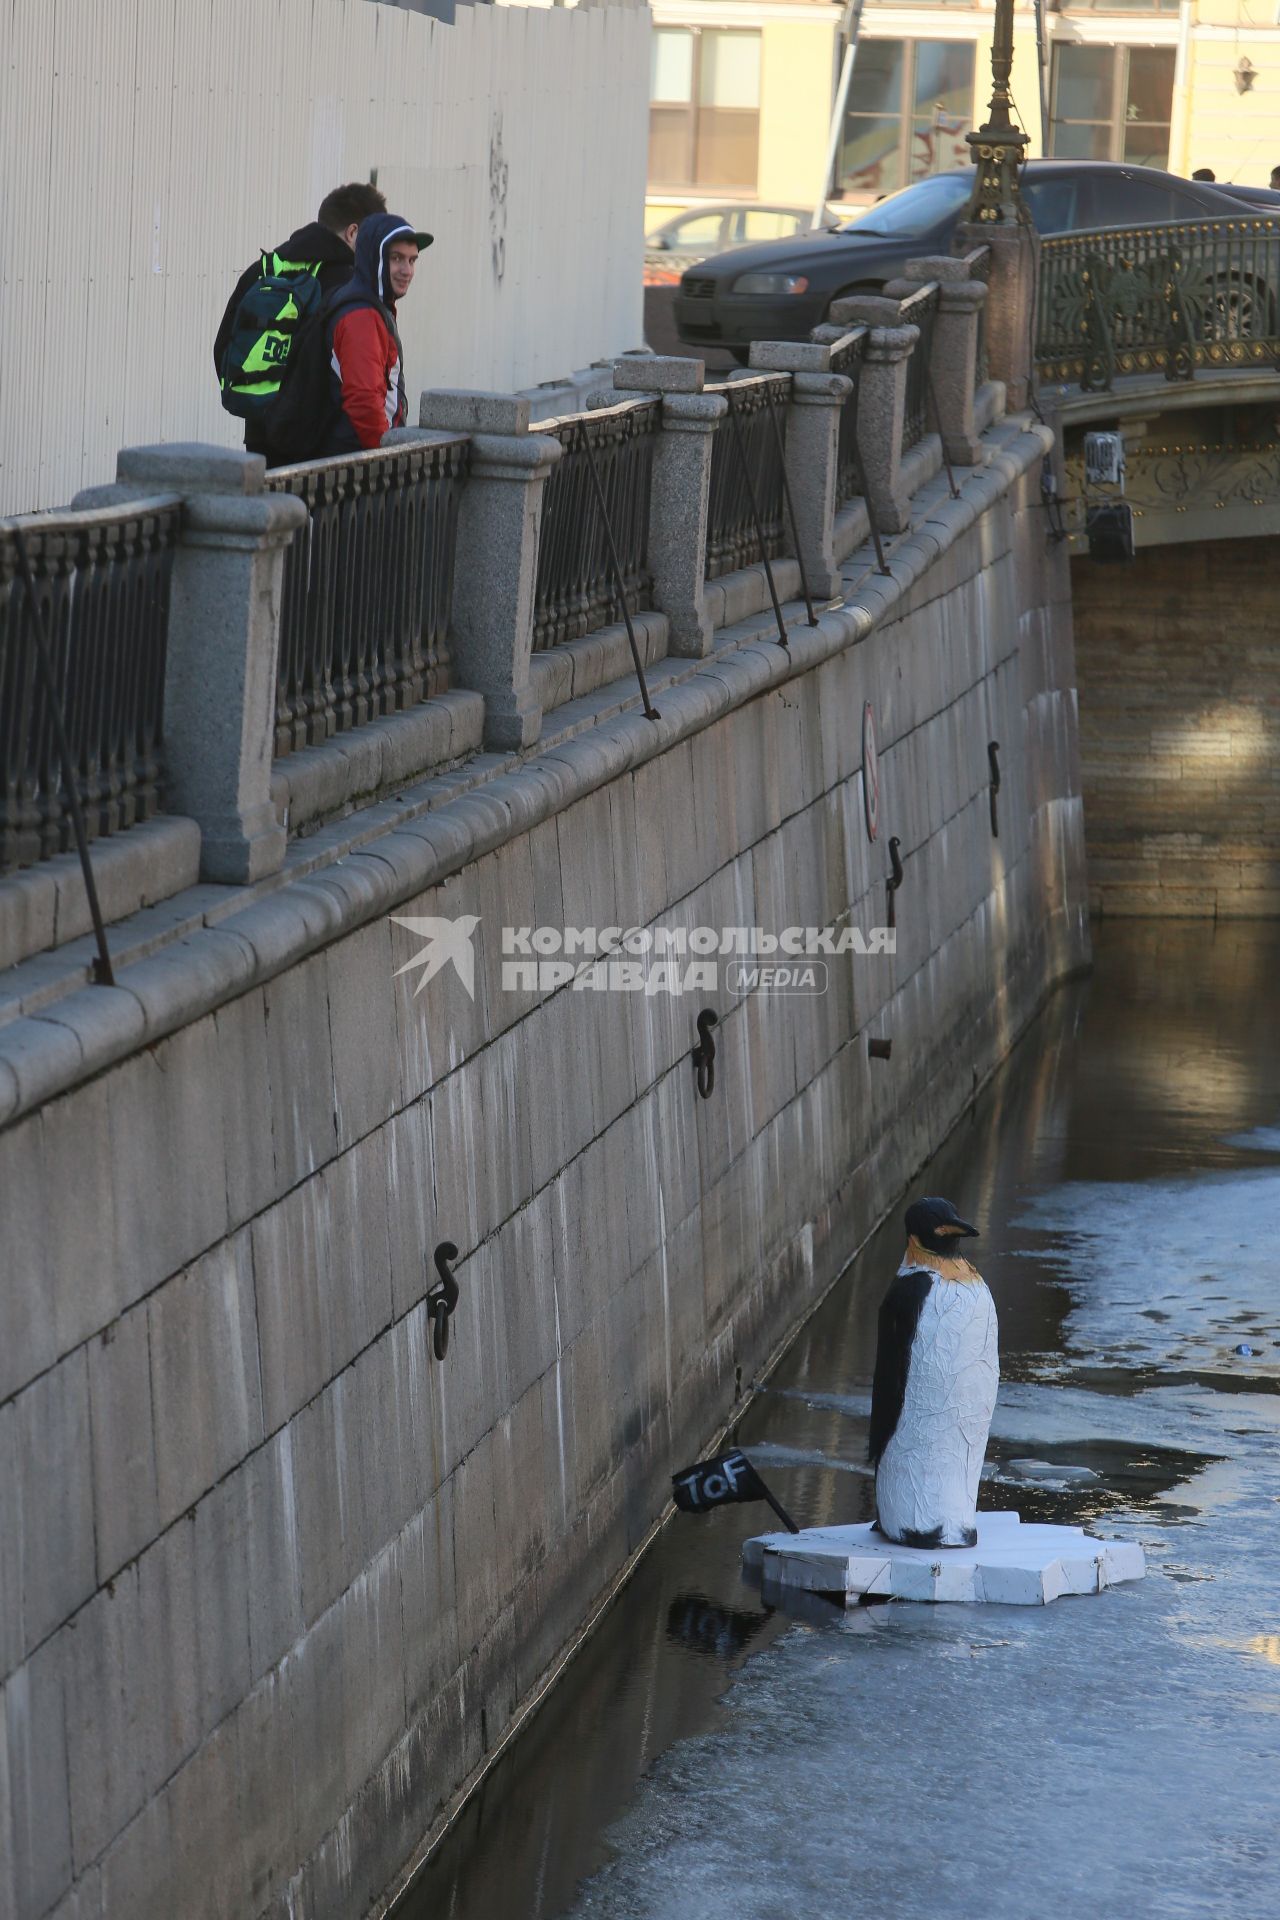 Санкт-Петербург. Арт-объект уличного художника Дениса Тофа - фигура пингвина на льдине в канале Грибоедова.